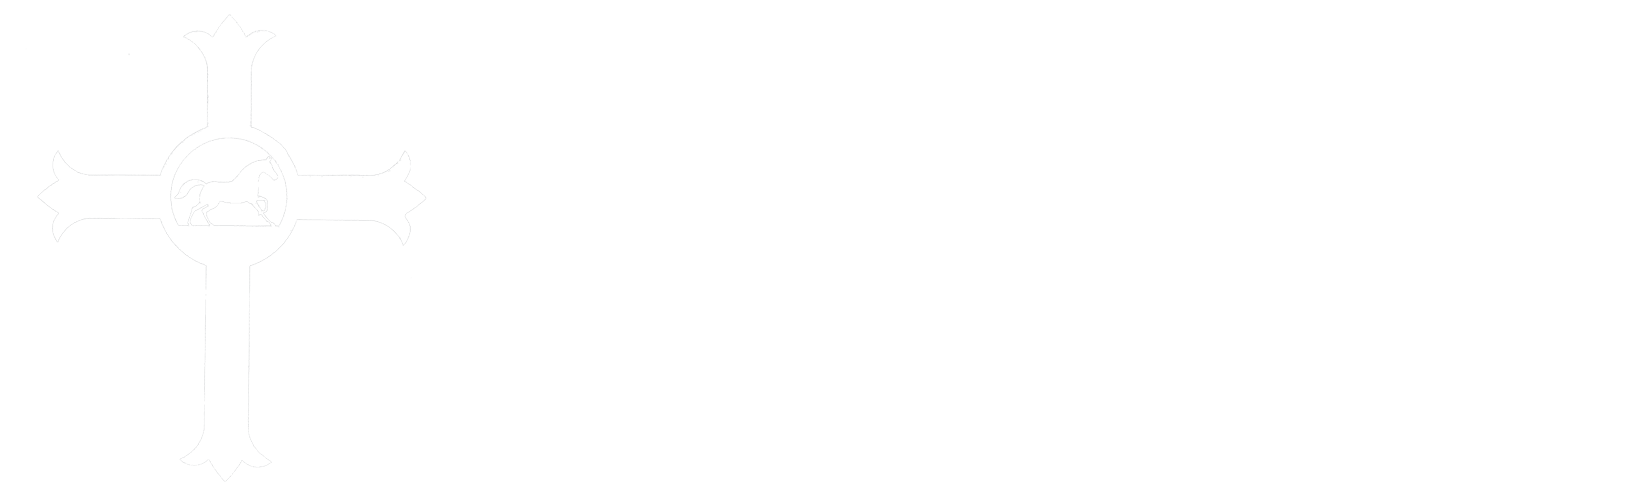 Faith Hope Love Riding Academy